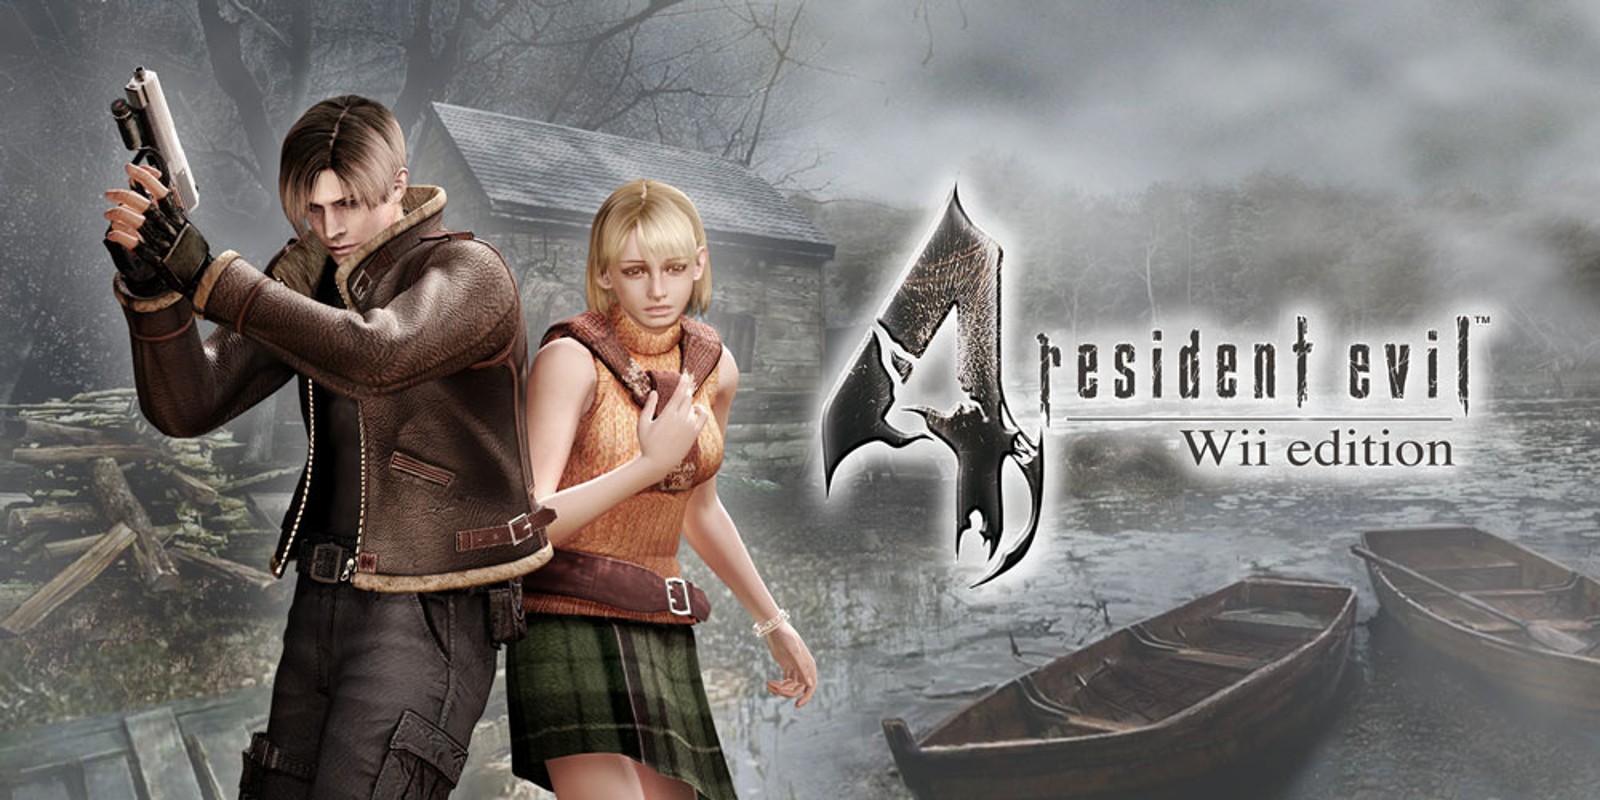 Прохождение игры Resident Evil 4 - Ultimate HD Edition # 34 (Русская версия игры) PC - Ver. HD Full.